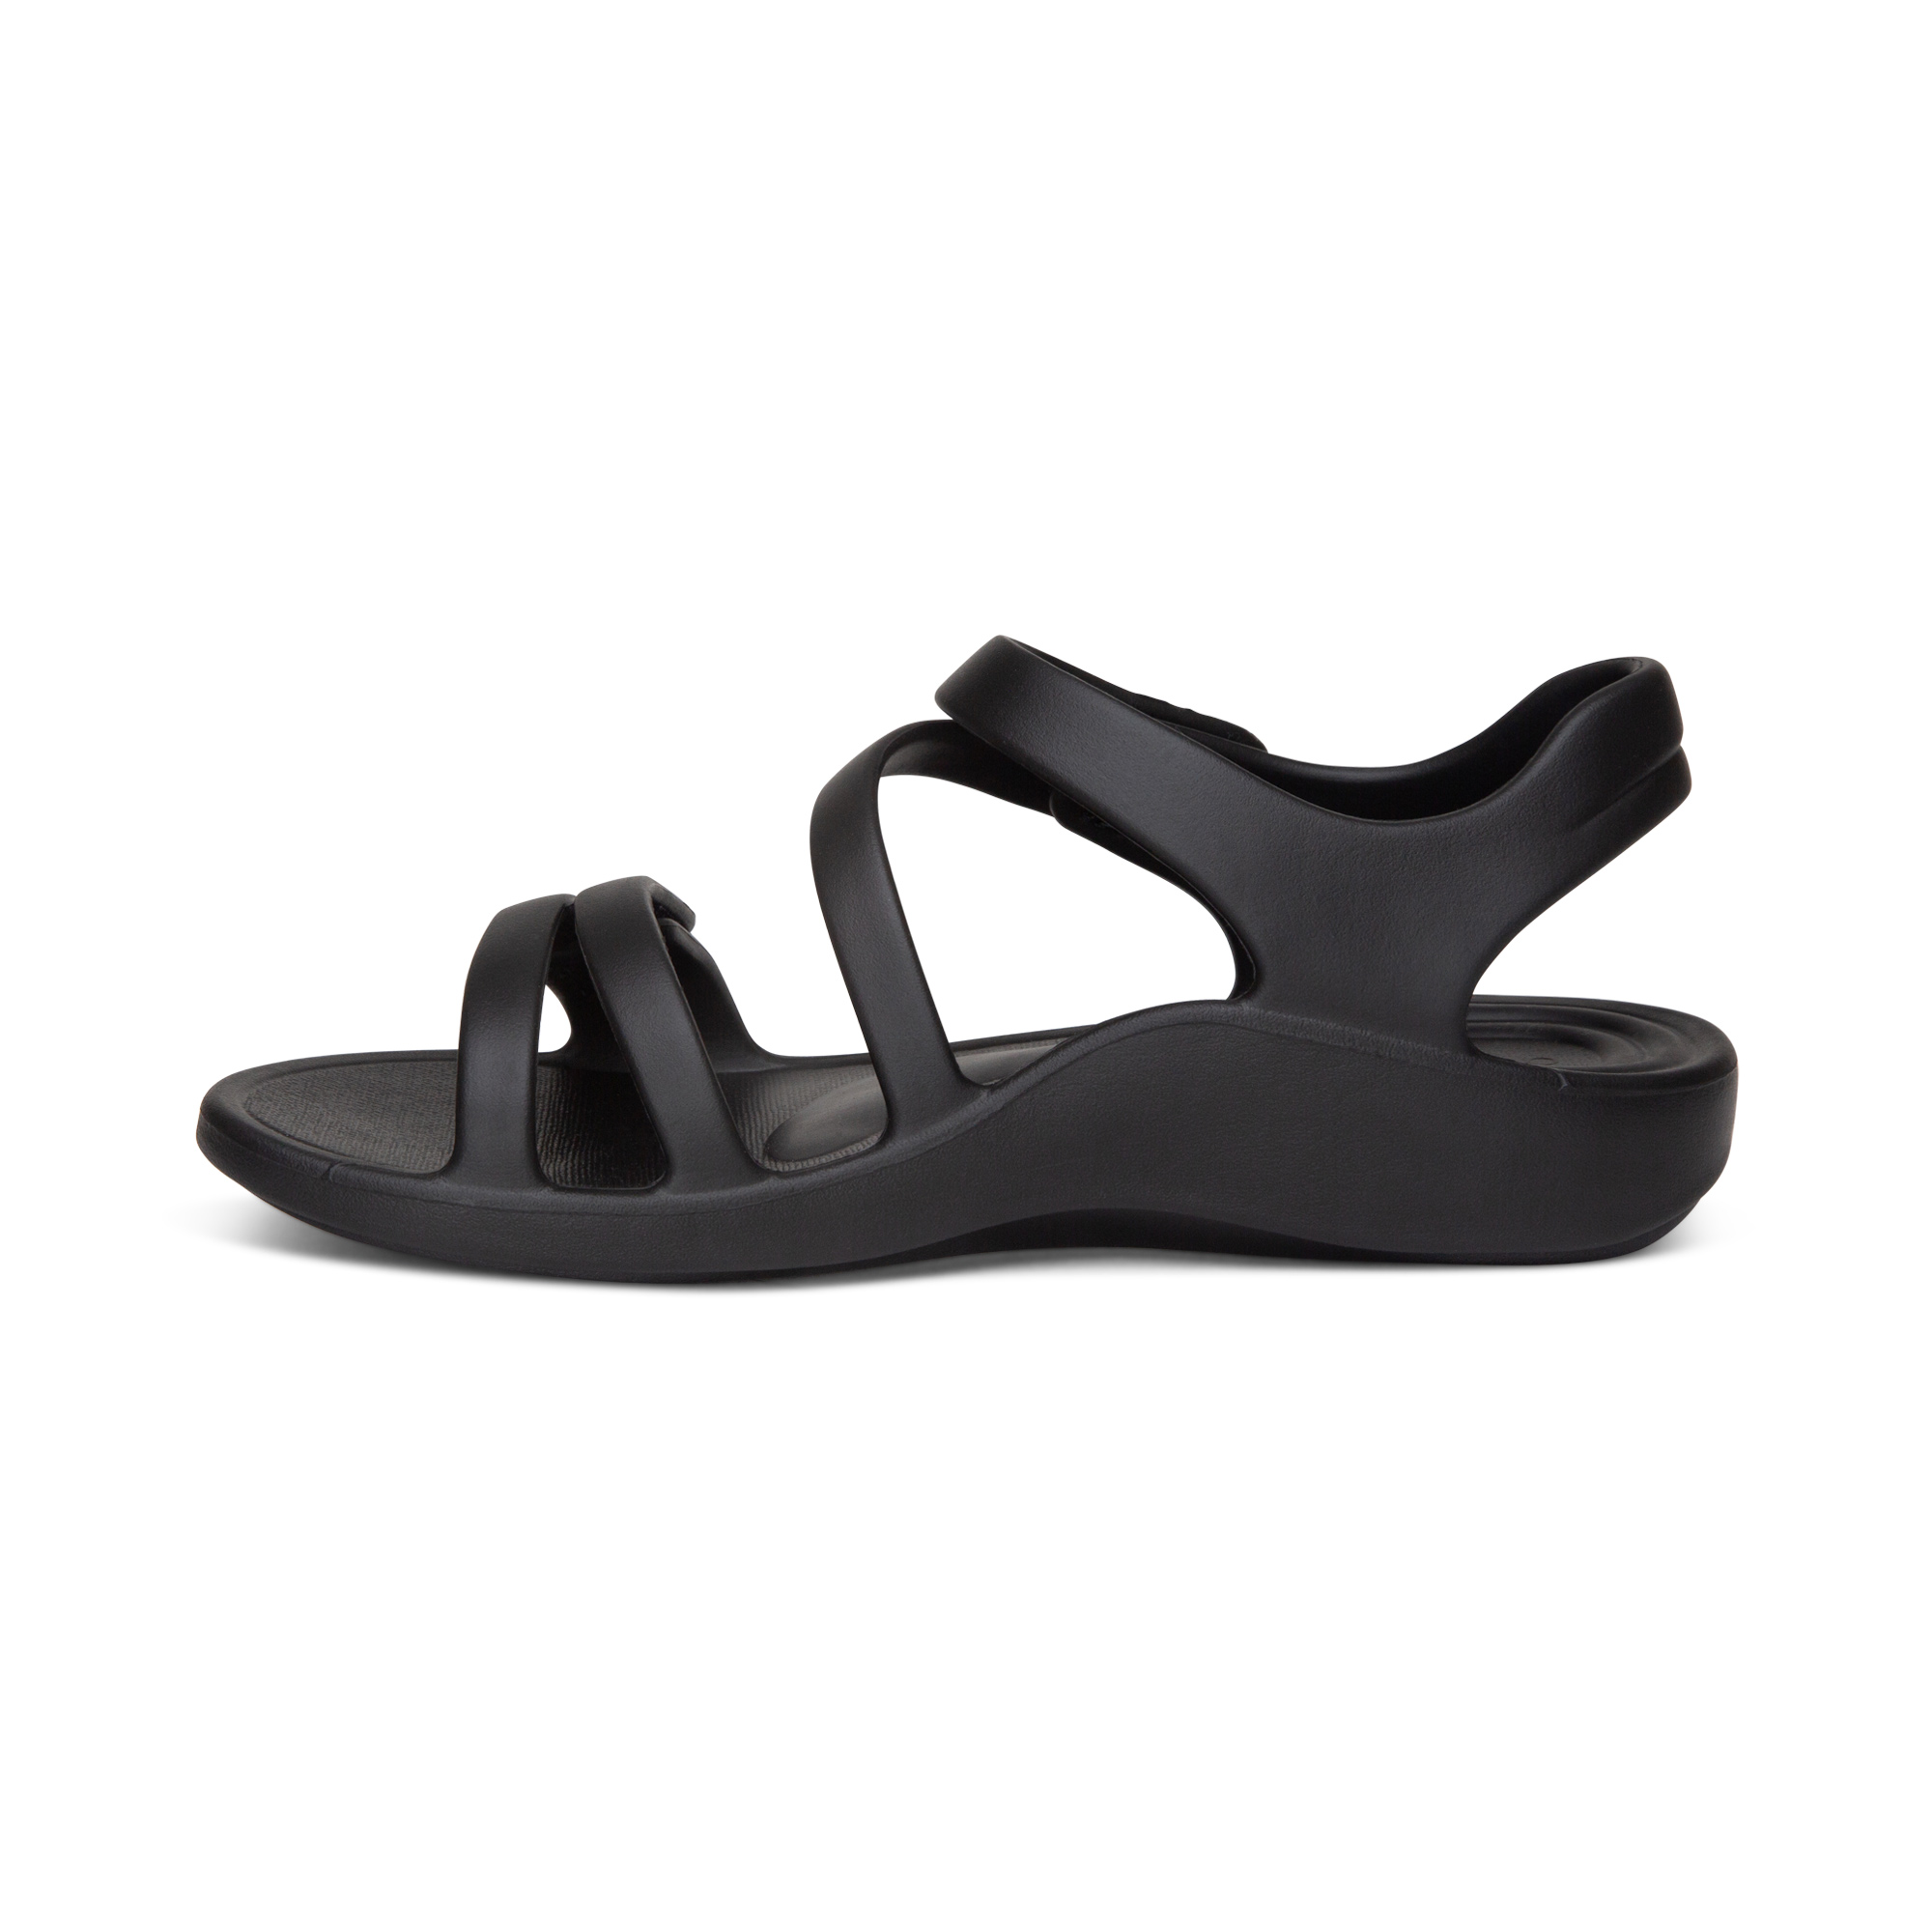 Sandal sức khoẻ nữ Aetrex Jillian Sport Black - Sandal quai dán siêu mềm nhẹ, chống thấm nước